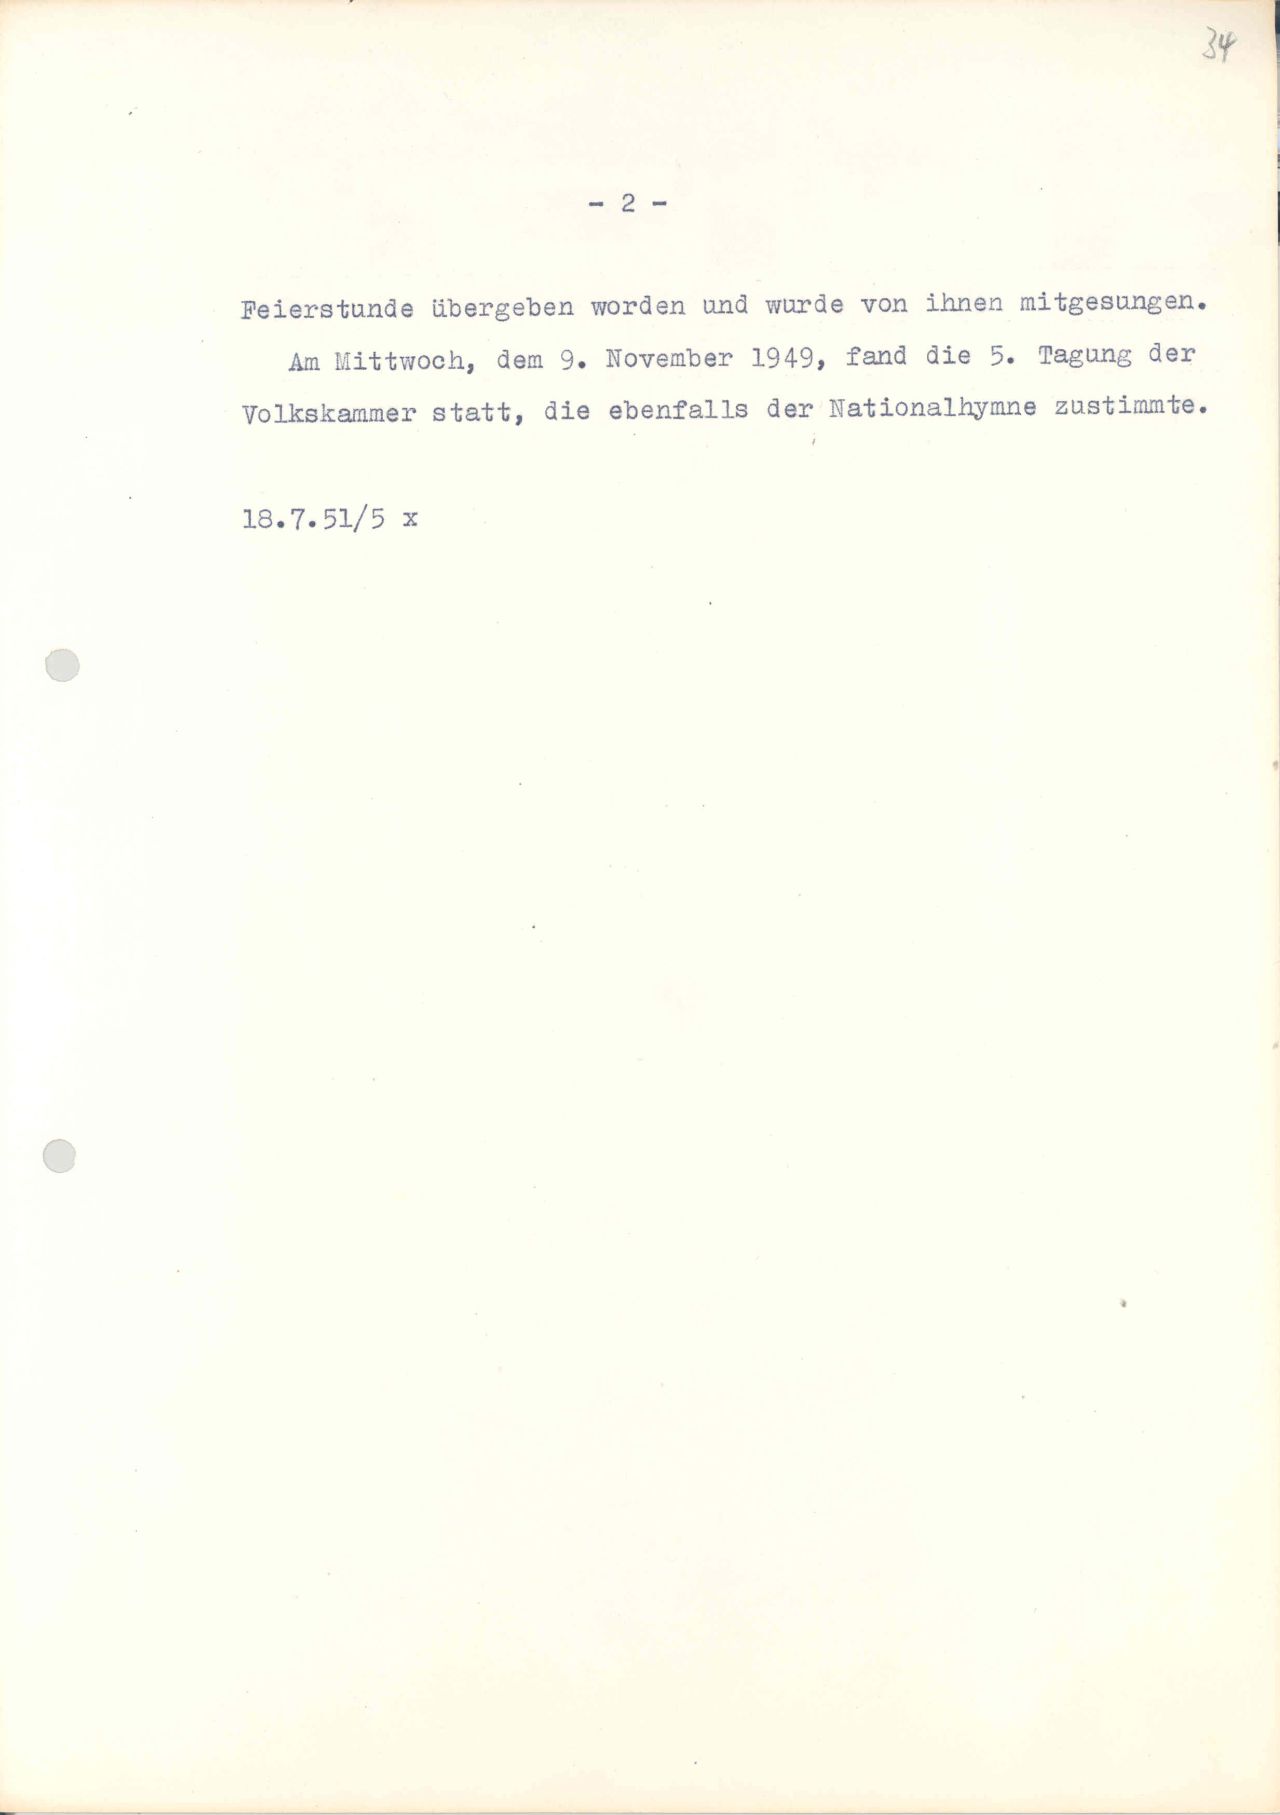 Der Präsident der DDR, Wilhelm Pieck, schildert in seinen Notizen das Zustandekommen der DDR-Nationalhymne